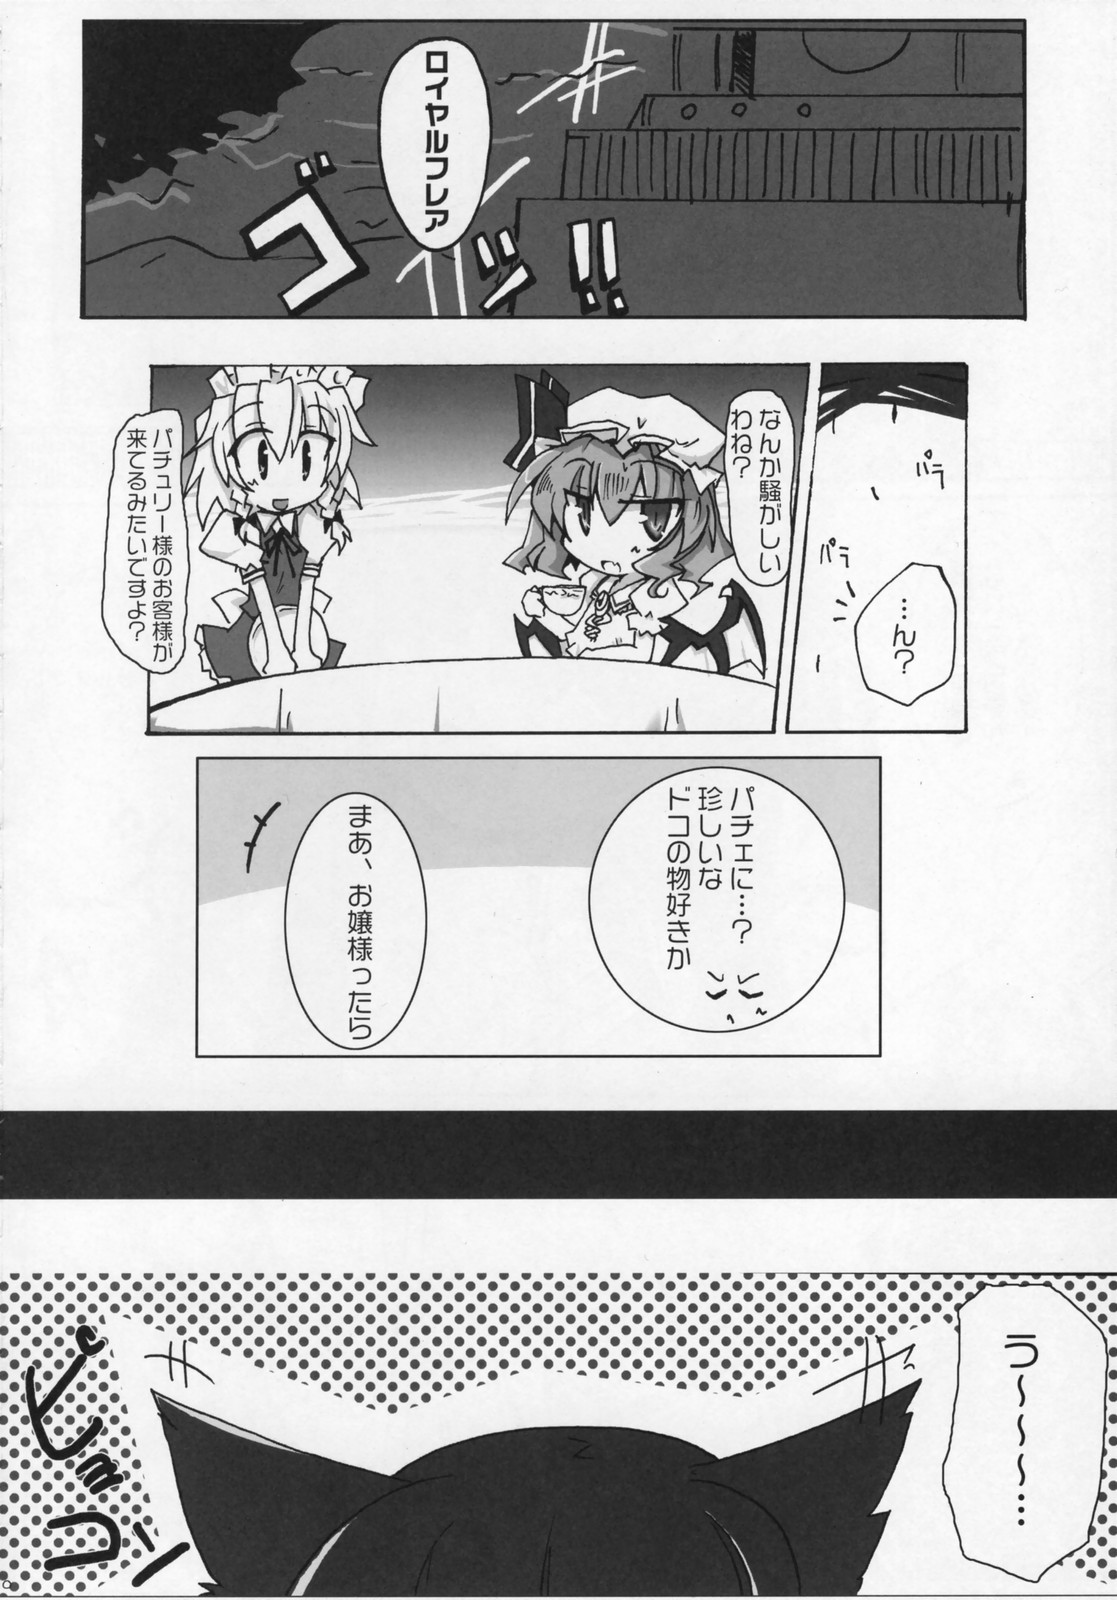 [Oppai-Bloomer!] Love-chuchu-GOGO-2! (Touhou Project) page 9 full